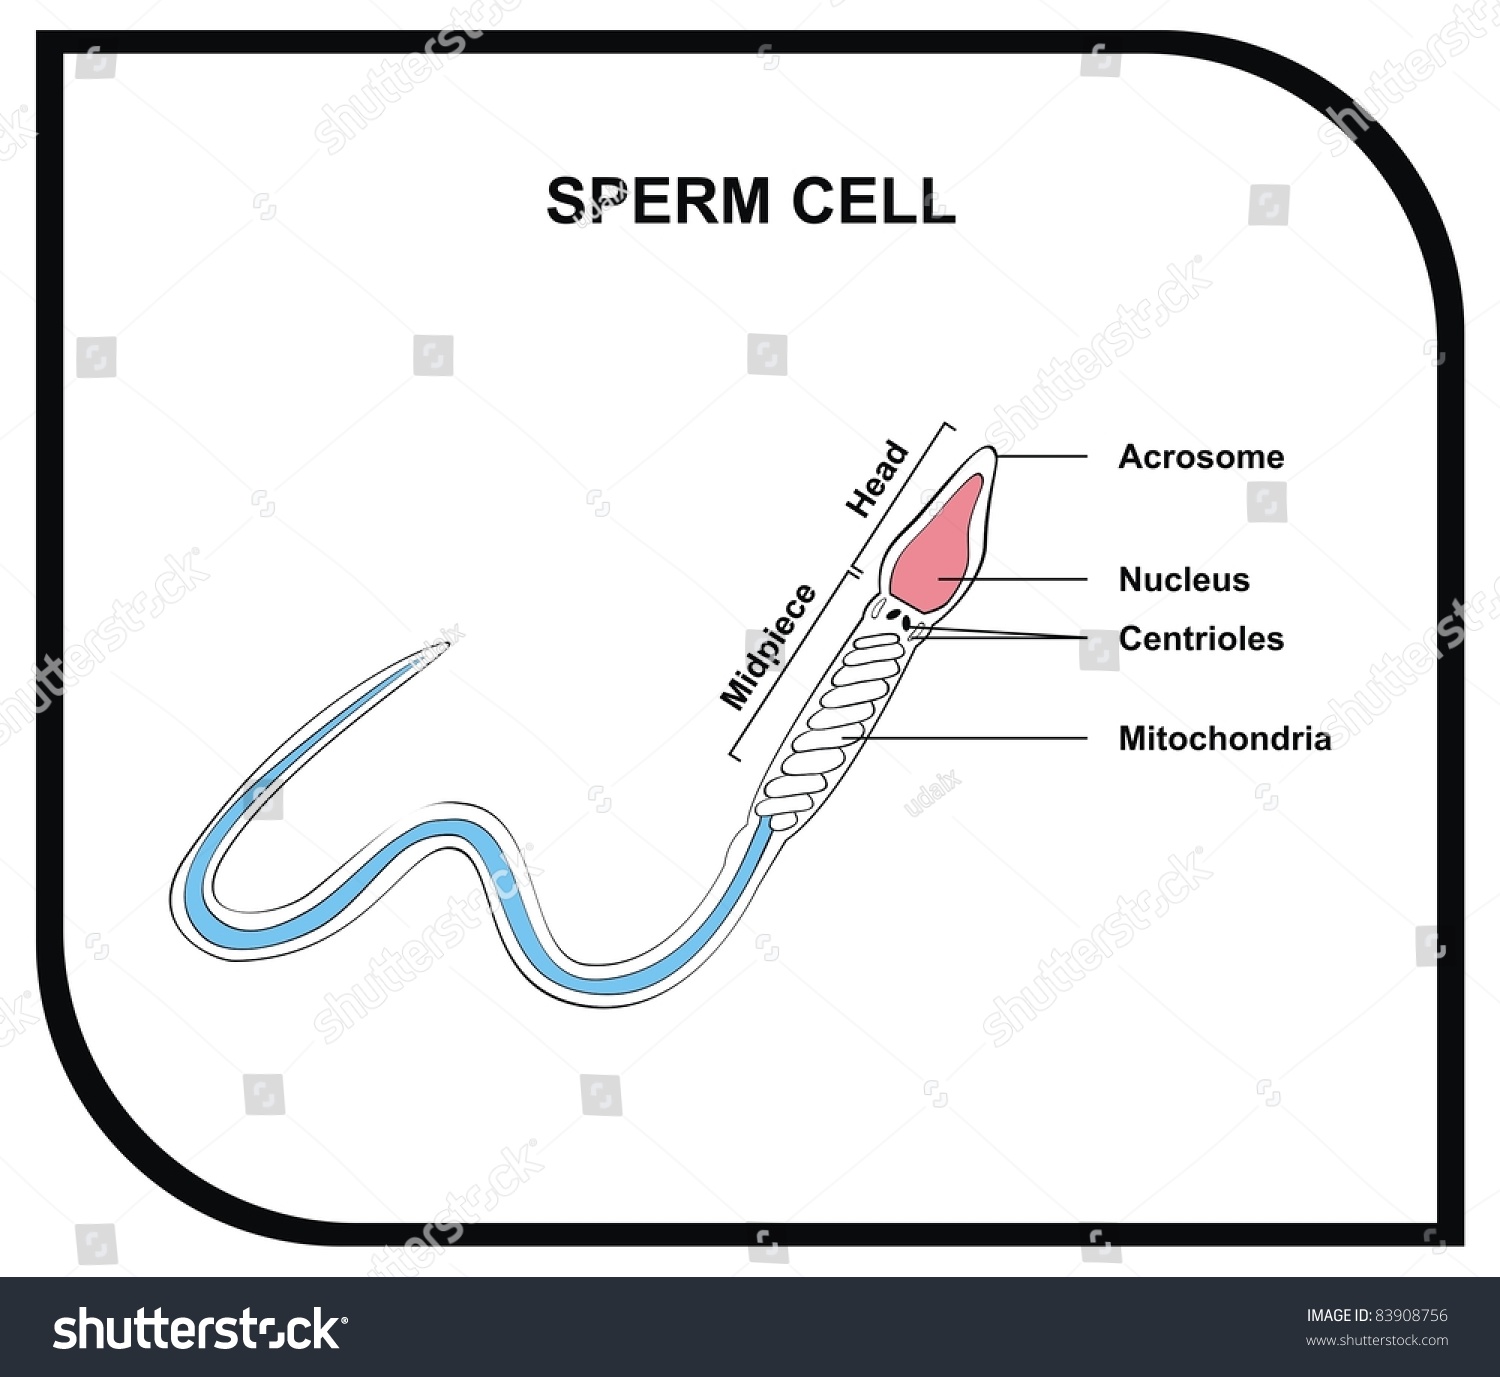 Nucleus human cells except sperm